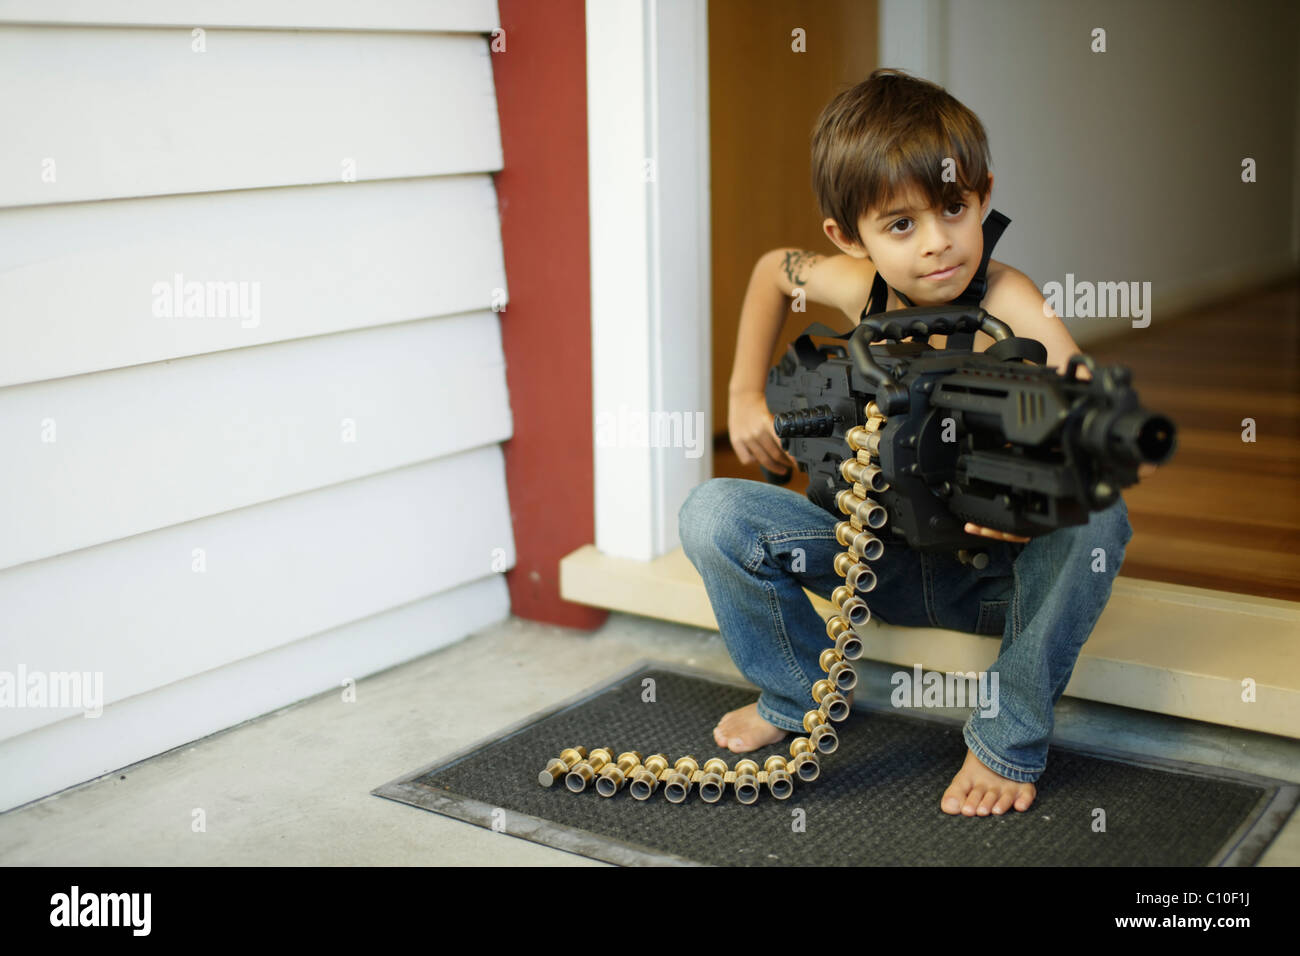 Los siete años de edad se encuentra en puerta la celebración de Toy Machine Gun Foto de stock